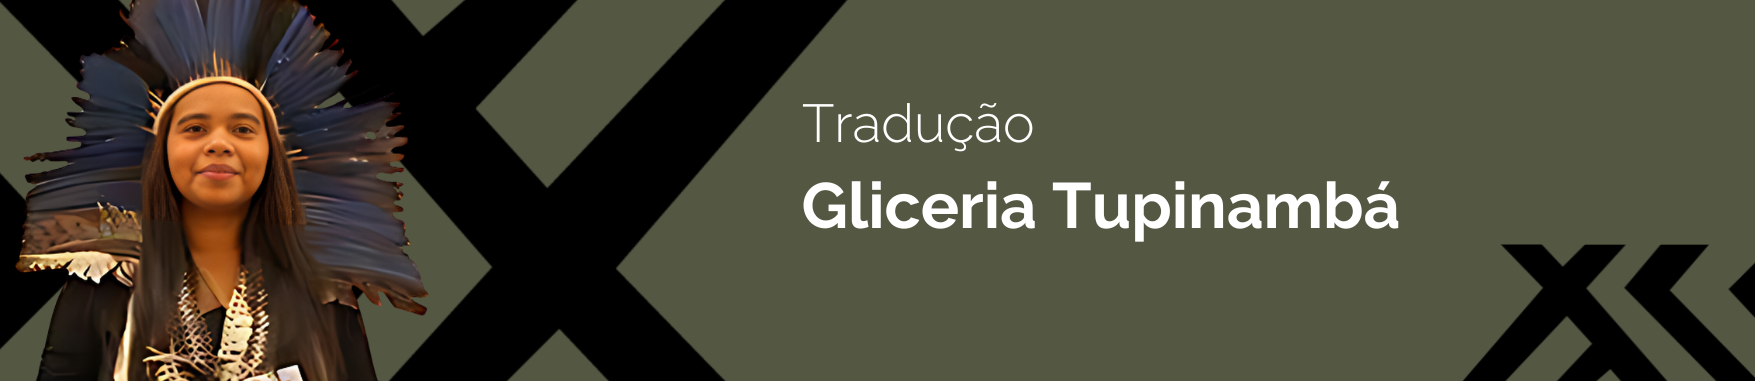 Banner com a imagem da Gliceria Tupinamba